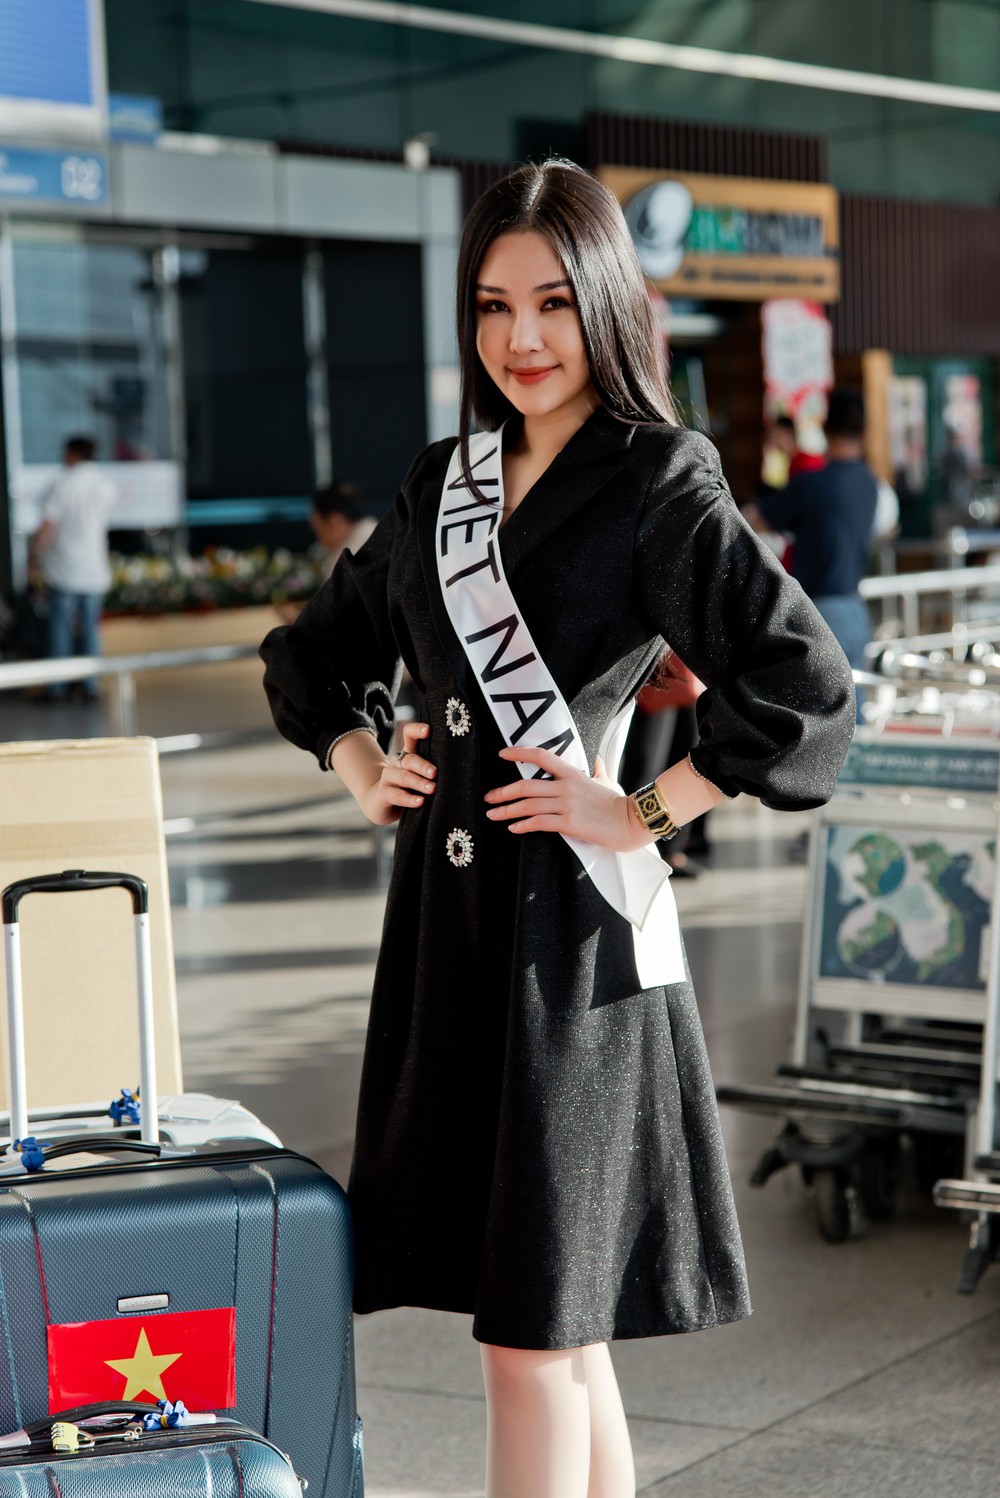 Lê Âu Ngân Anh lên đường sang Philippines dự thi Miss Intercontinental dù không được cấp phép - Ảnh 5.